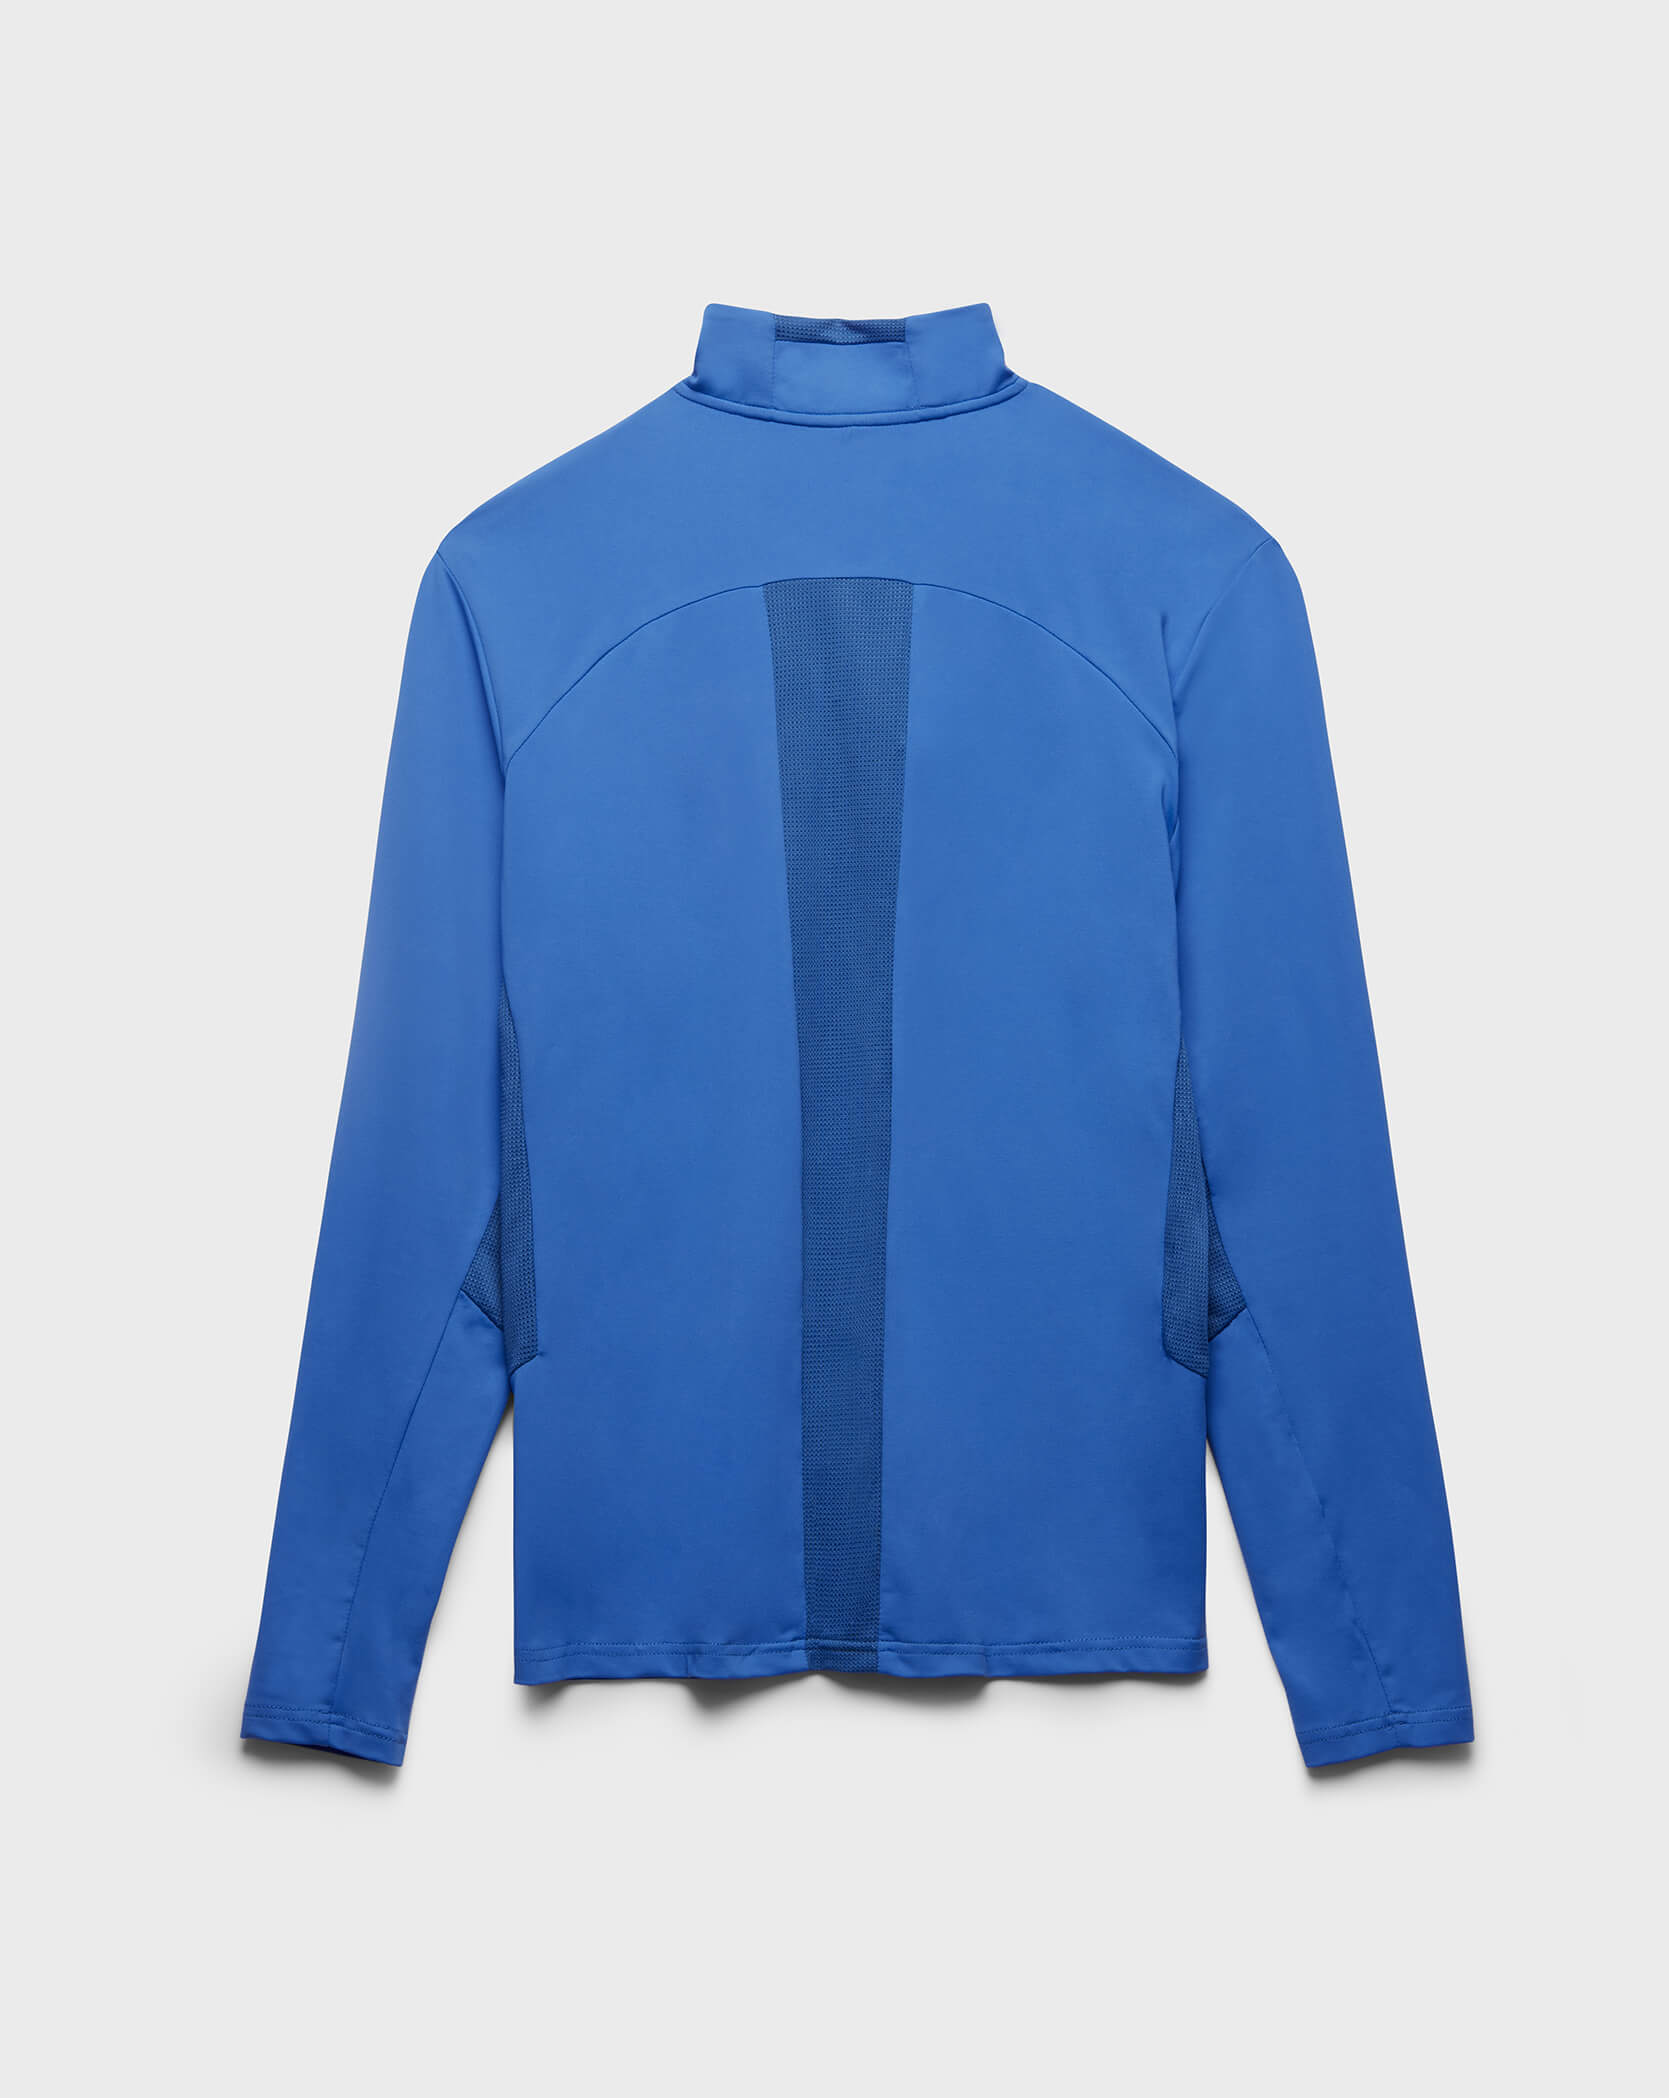 Blue Twinzz activewear zip top back